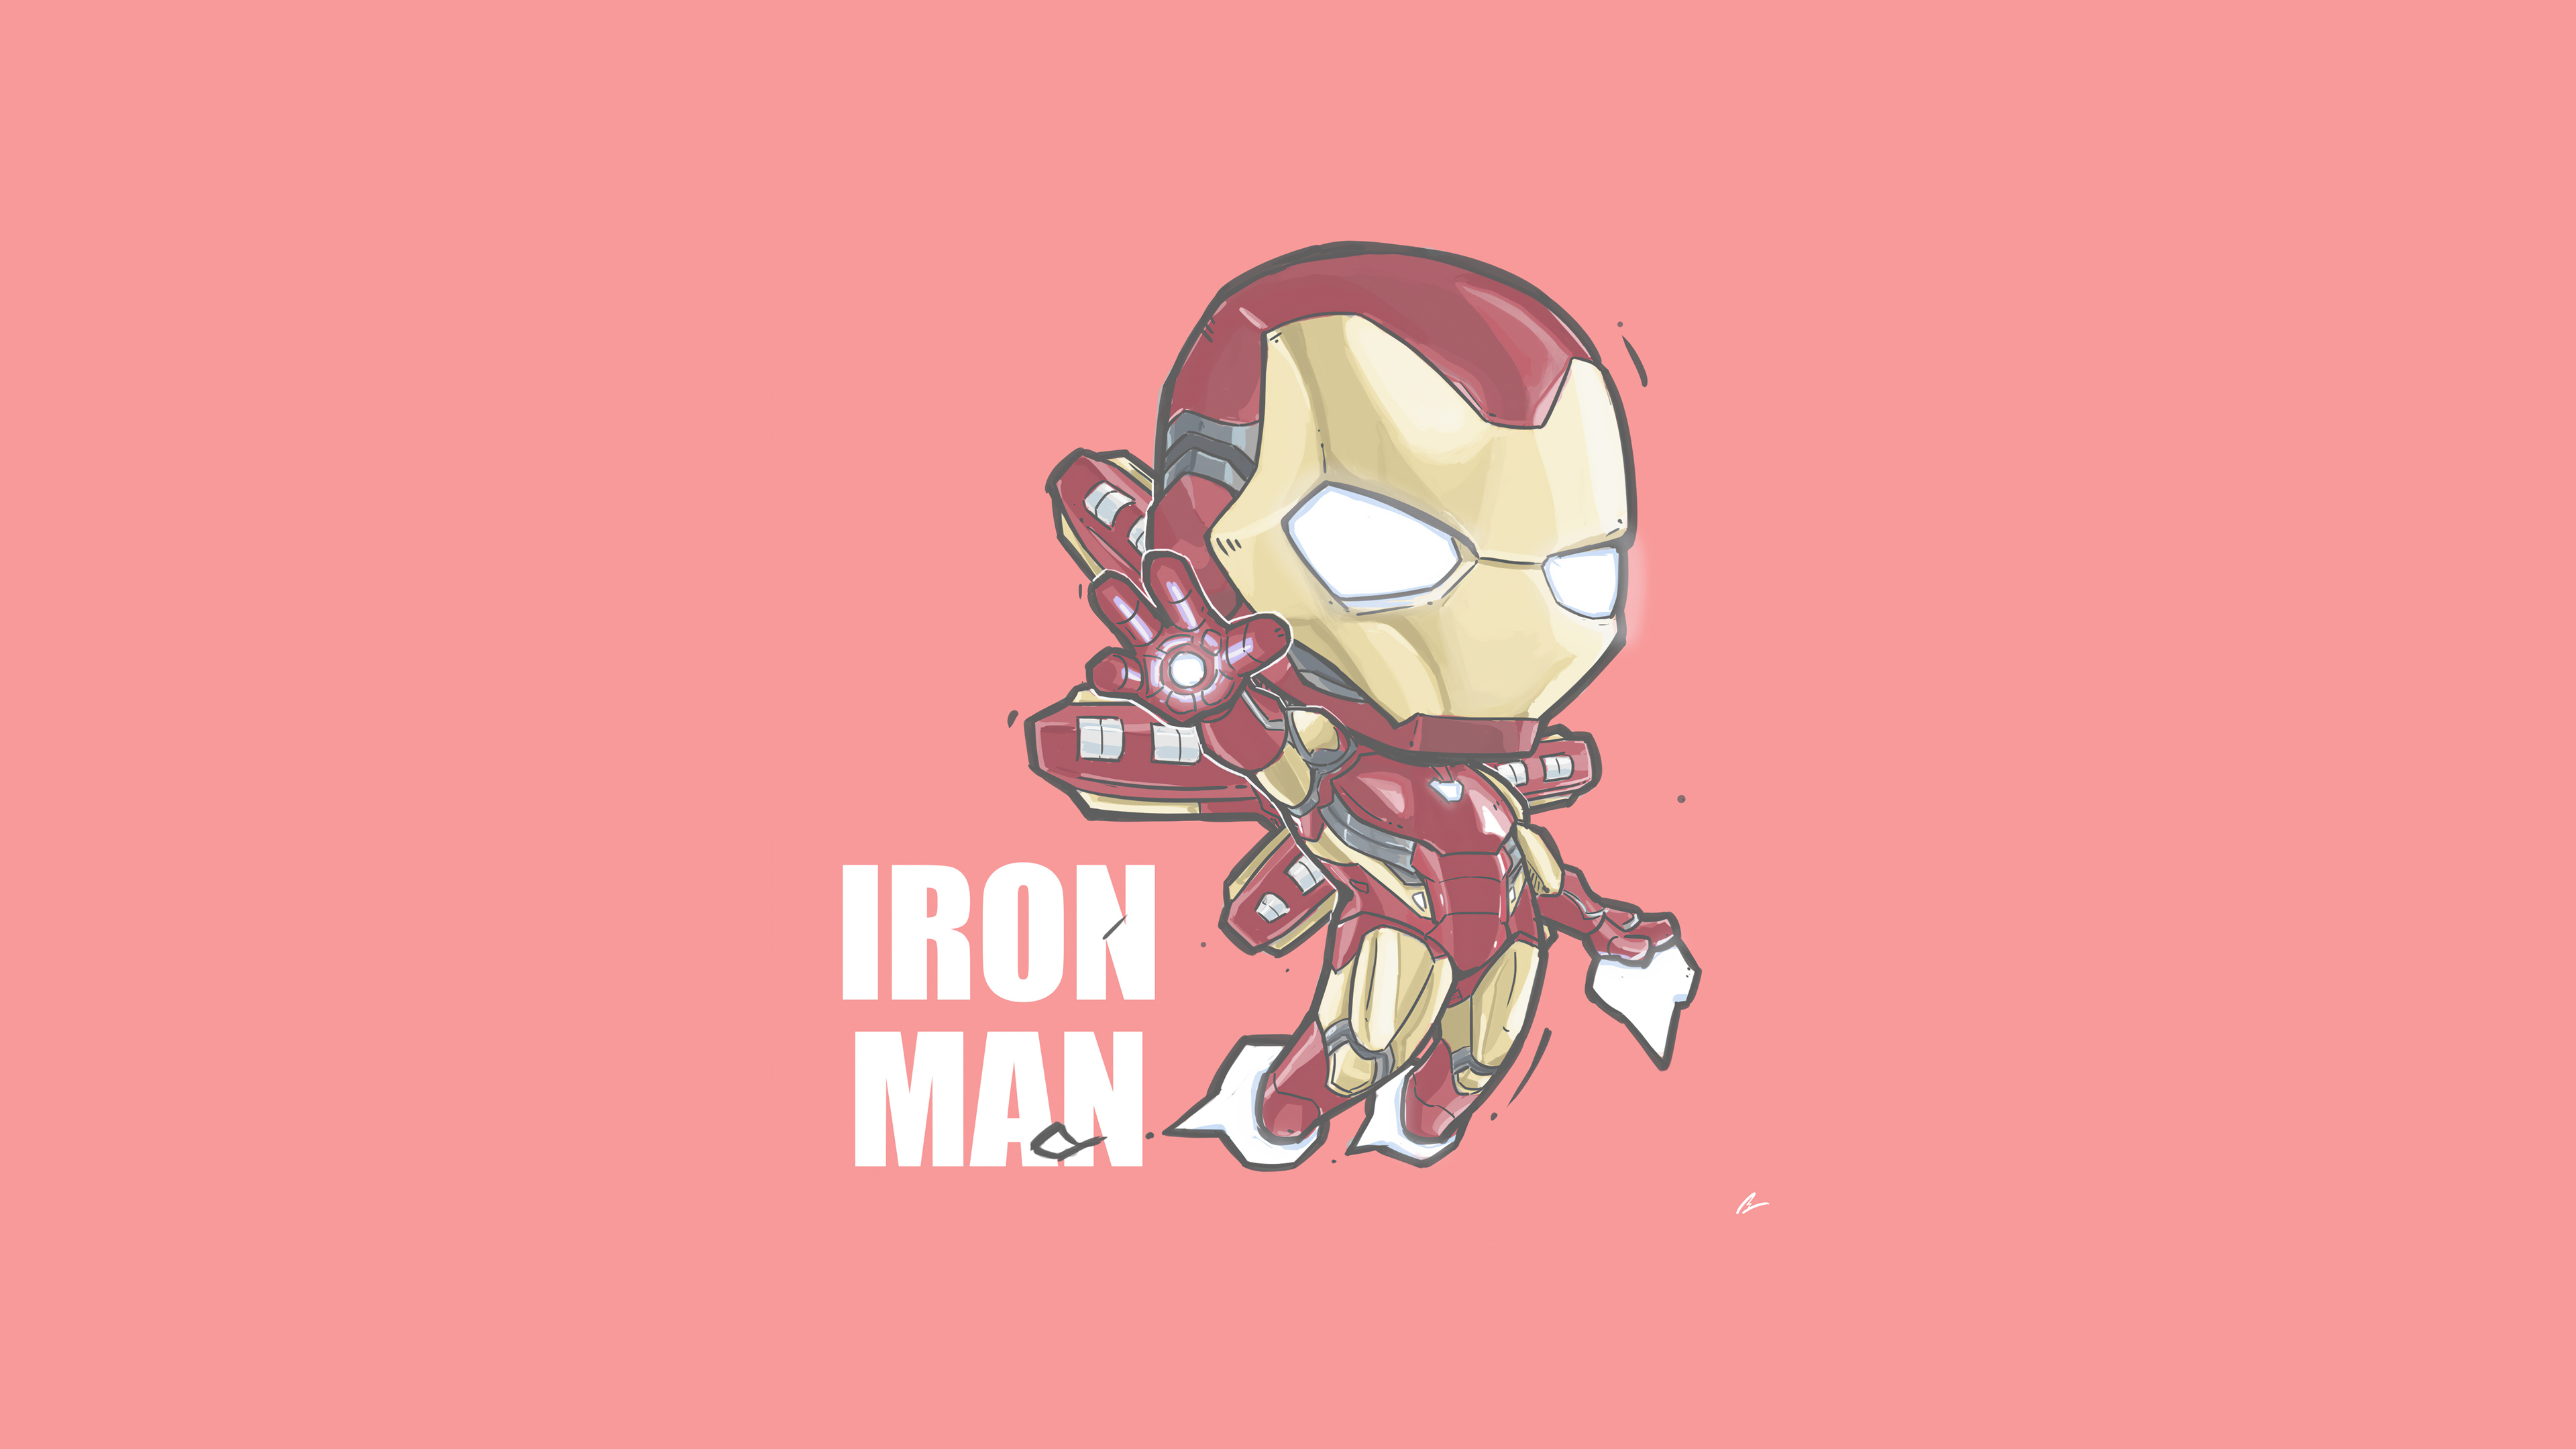 Chibi, Iron Man, Marvel Comics, JIE LOENG Wallpaper & Background Image